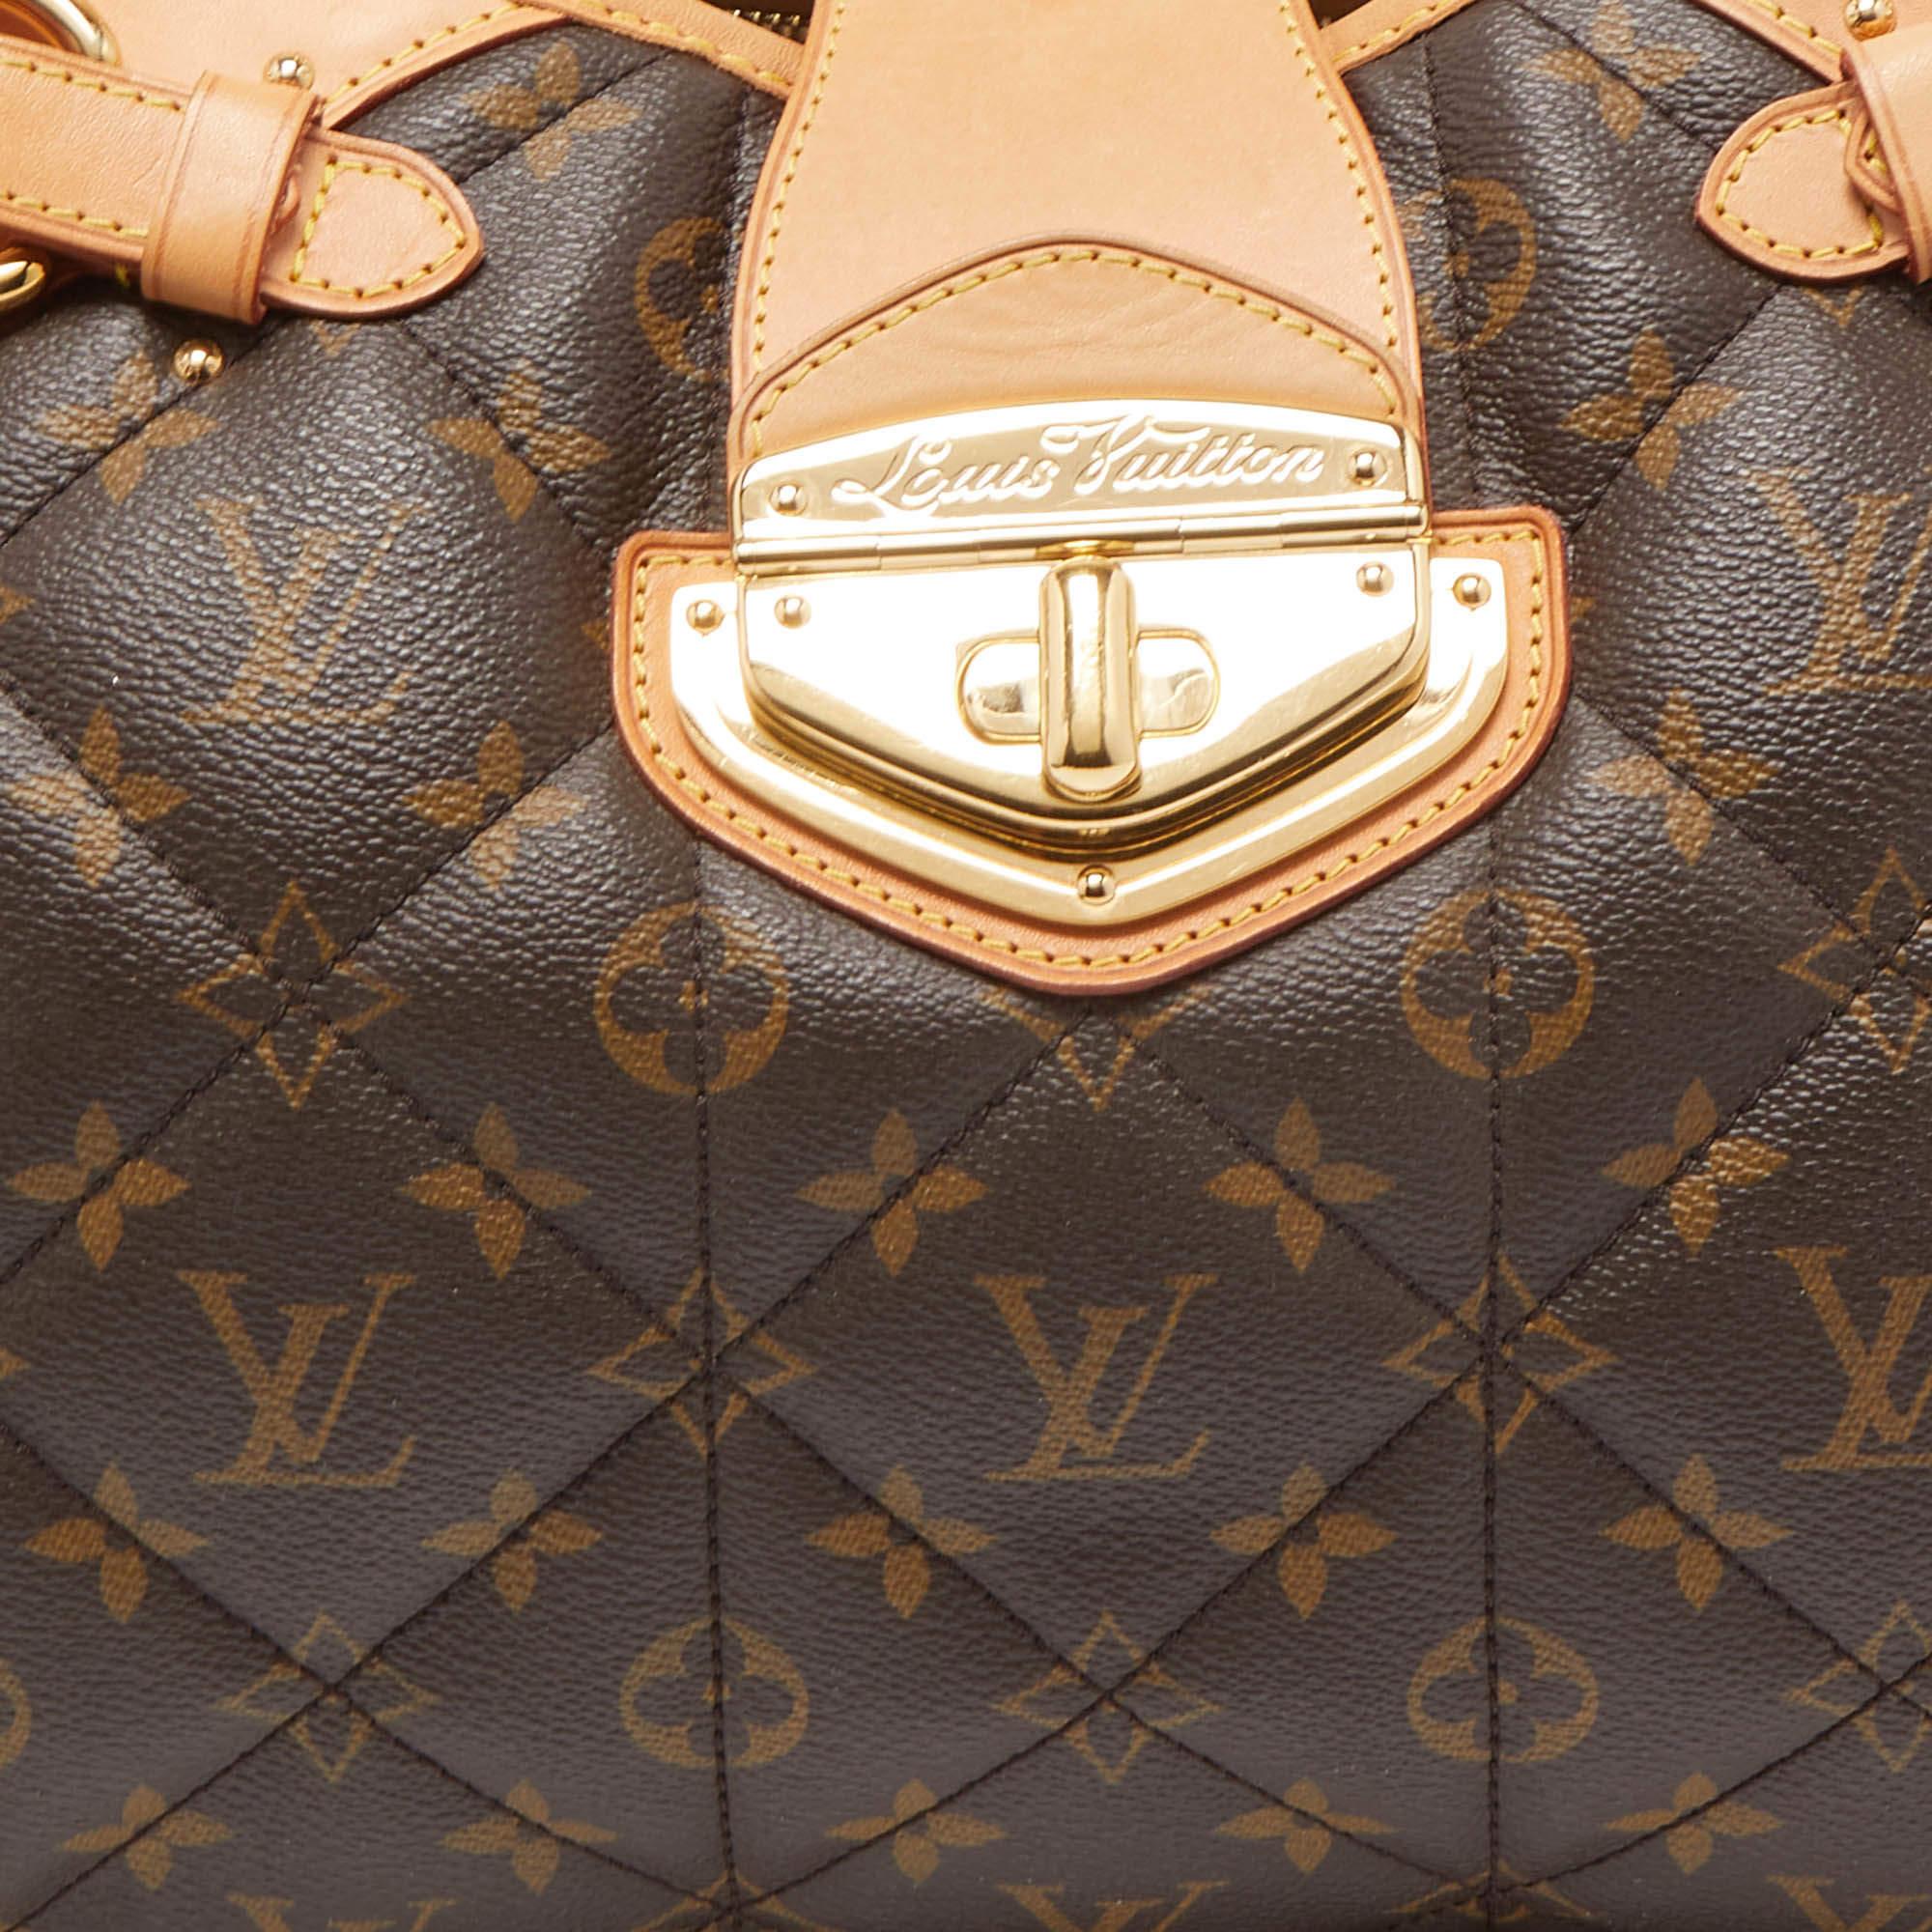 Women's Louis Vuitton Monogram Canvas Etoile Shopper Bag